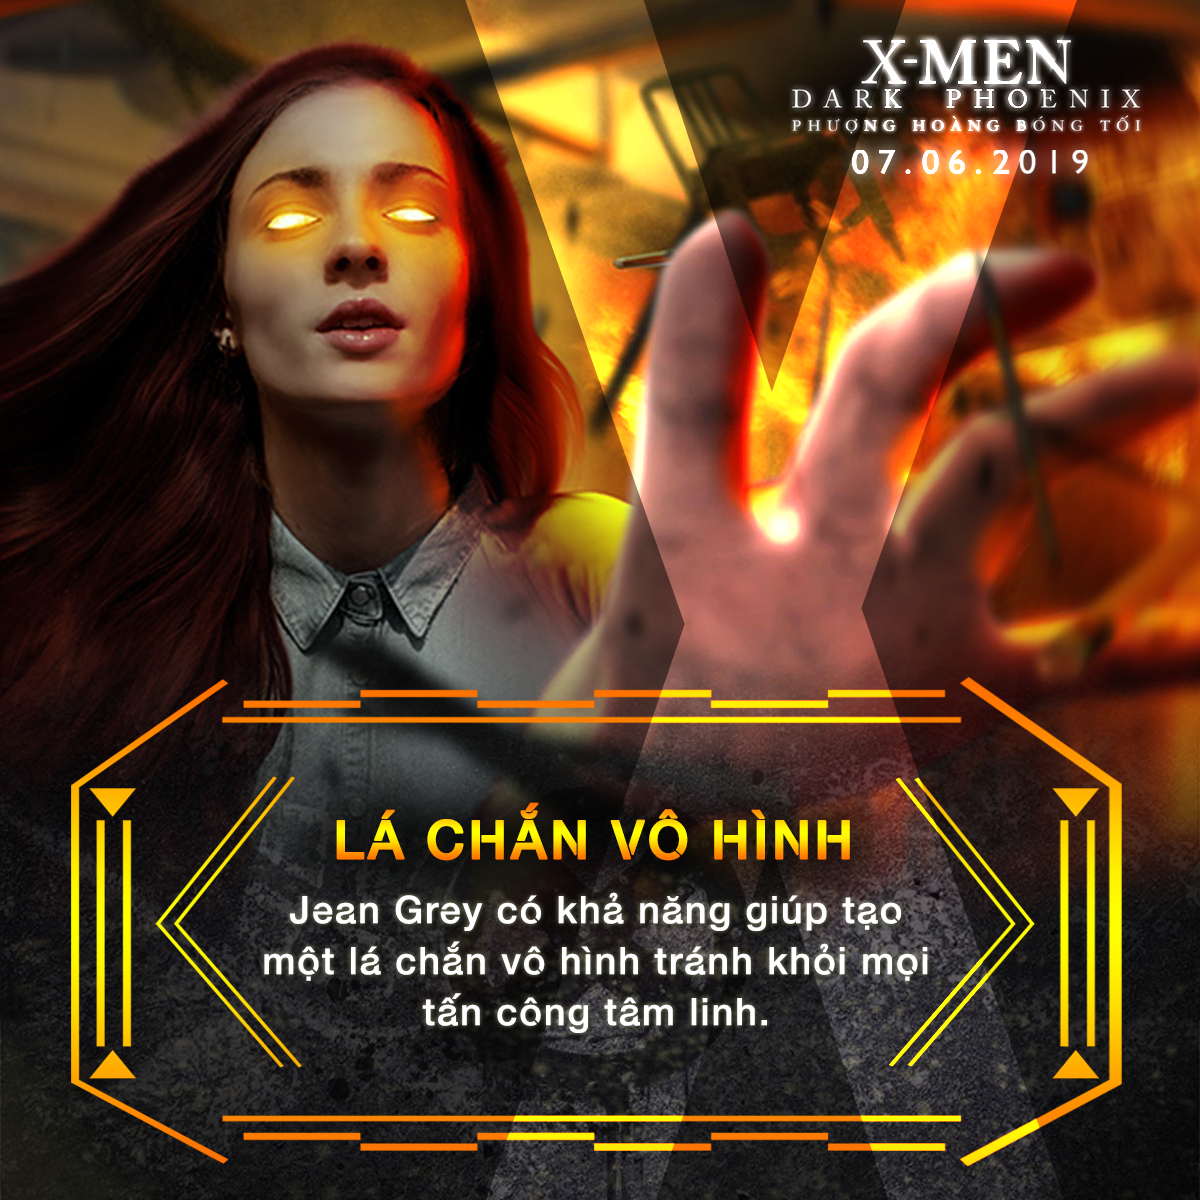 Choáng ngợp với sức mạnh bá đạo của người đẹp Jean Grey trong vũ trụ dị nhân X-Men - Ảnh 5.